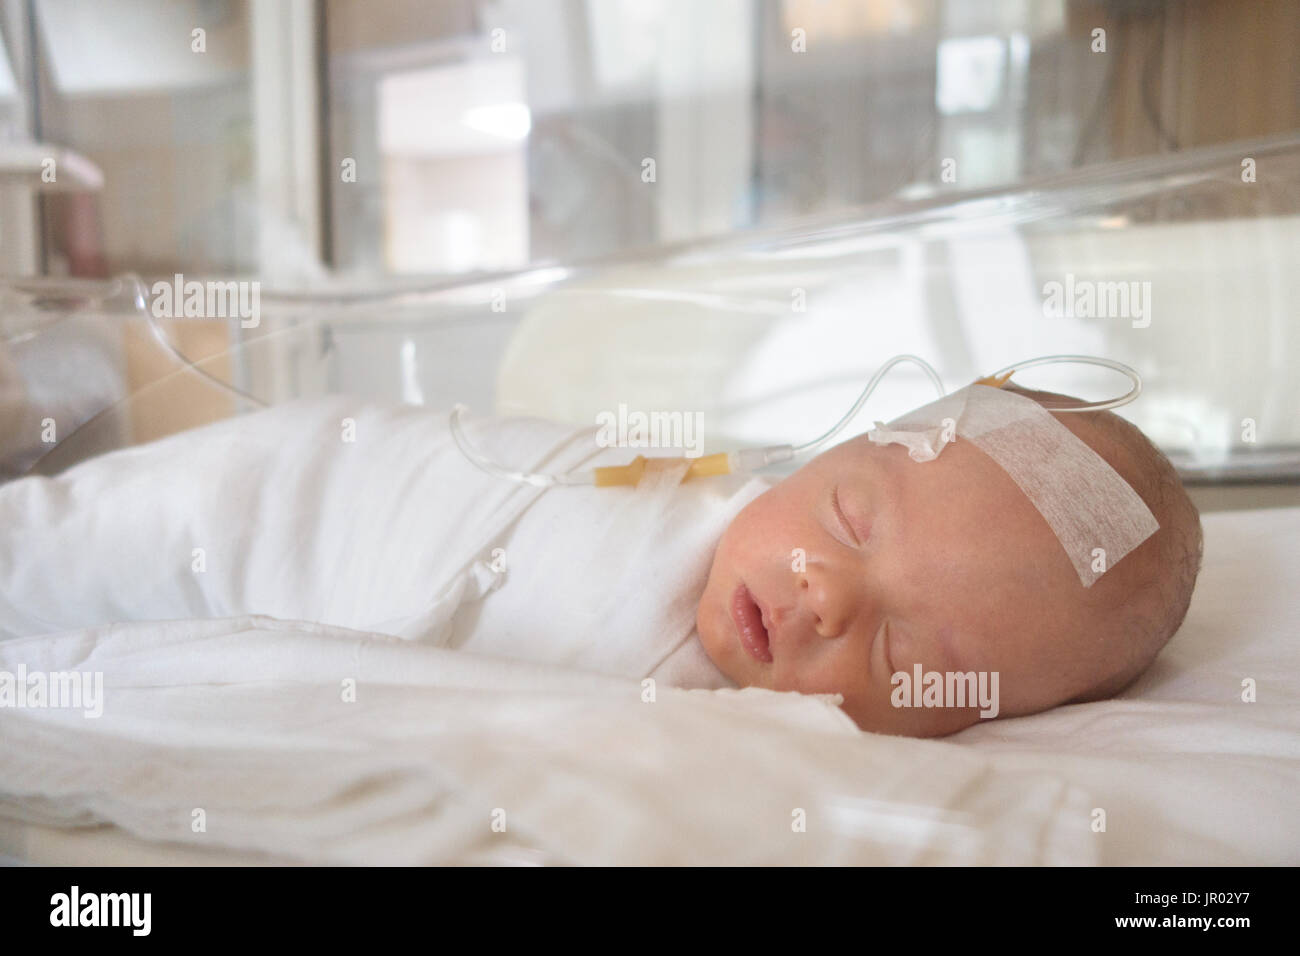 Bébé nouveau-né de dormir sur une goutte dans un hôpital Banque D'Images